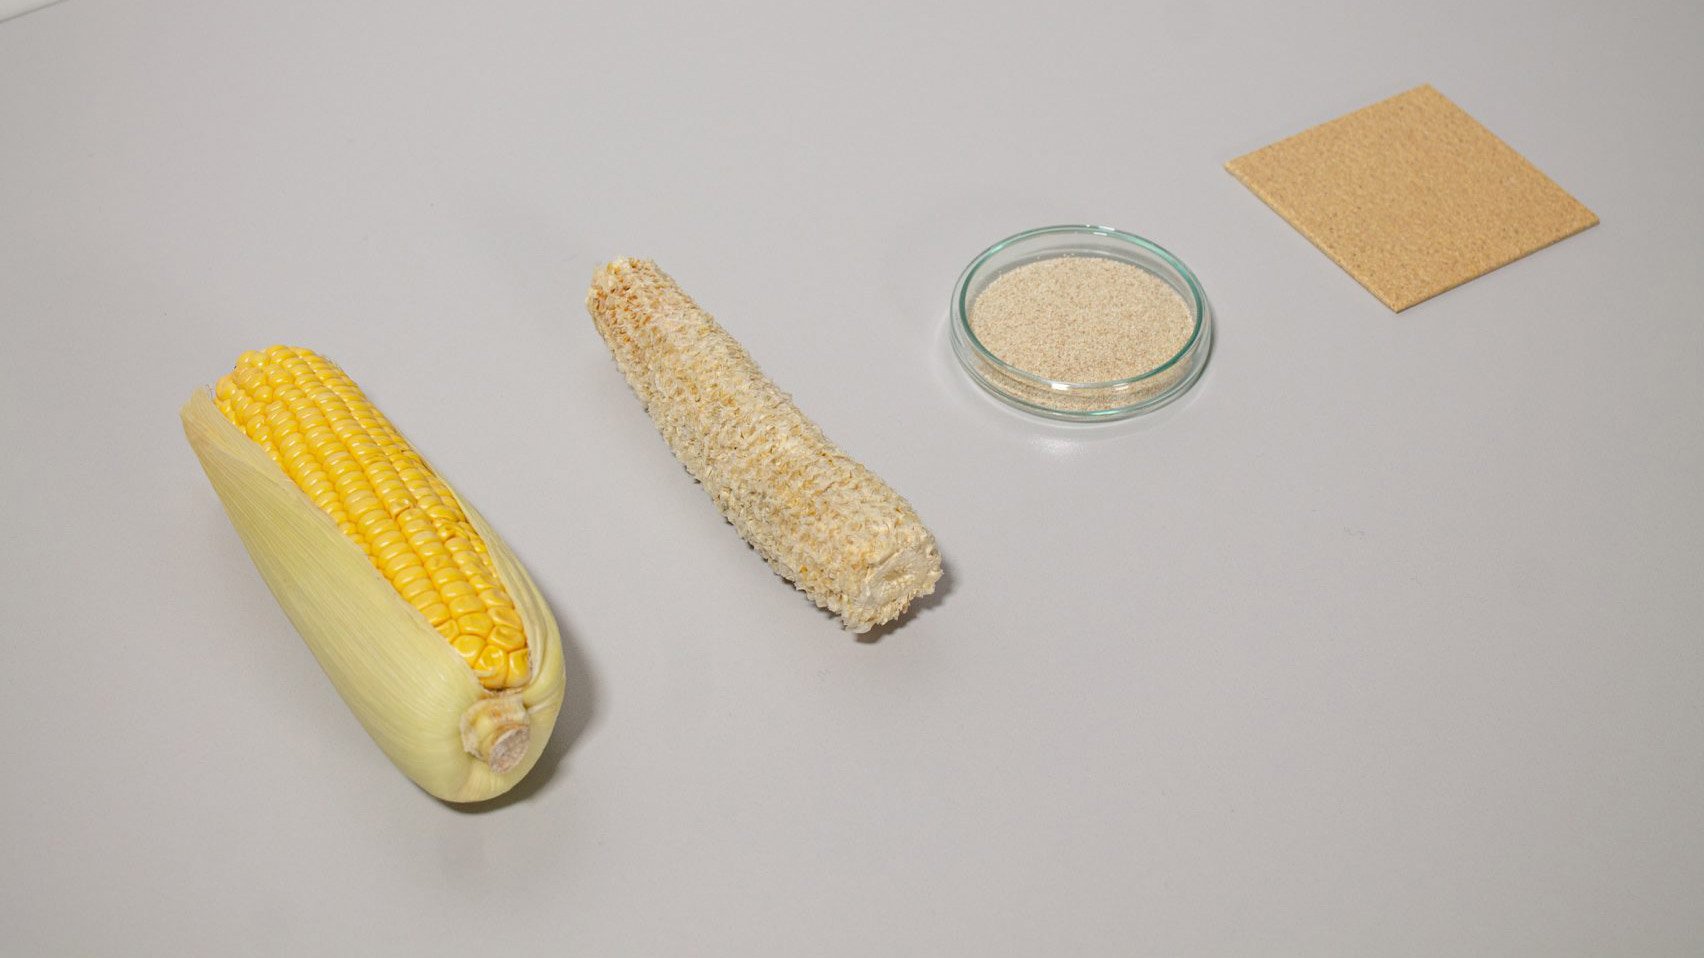 CornWall дает выброшенным кукурузным початкам новую жизнь в качестве внутренней плитки